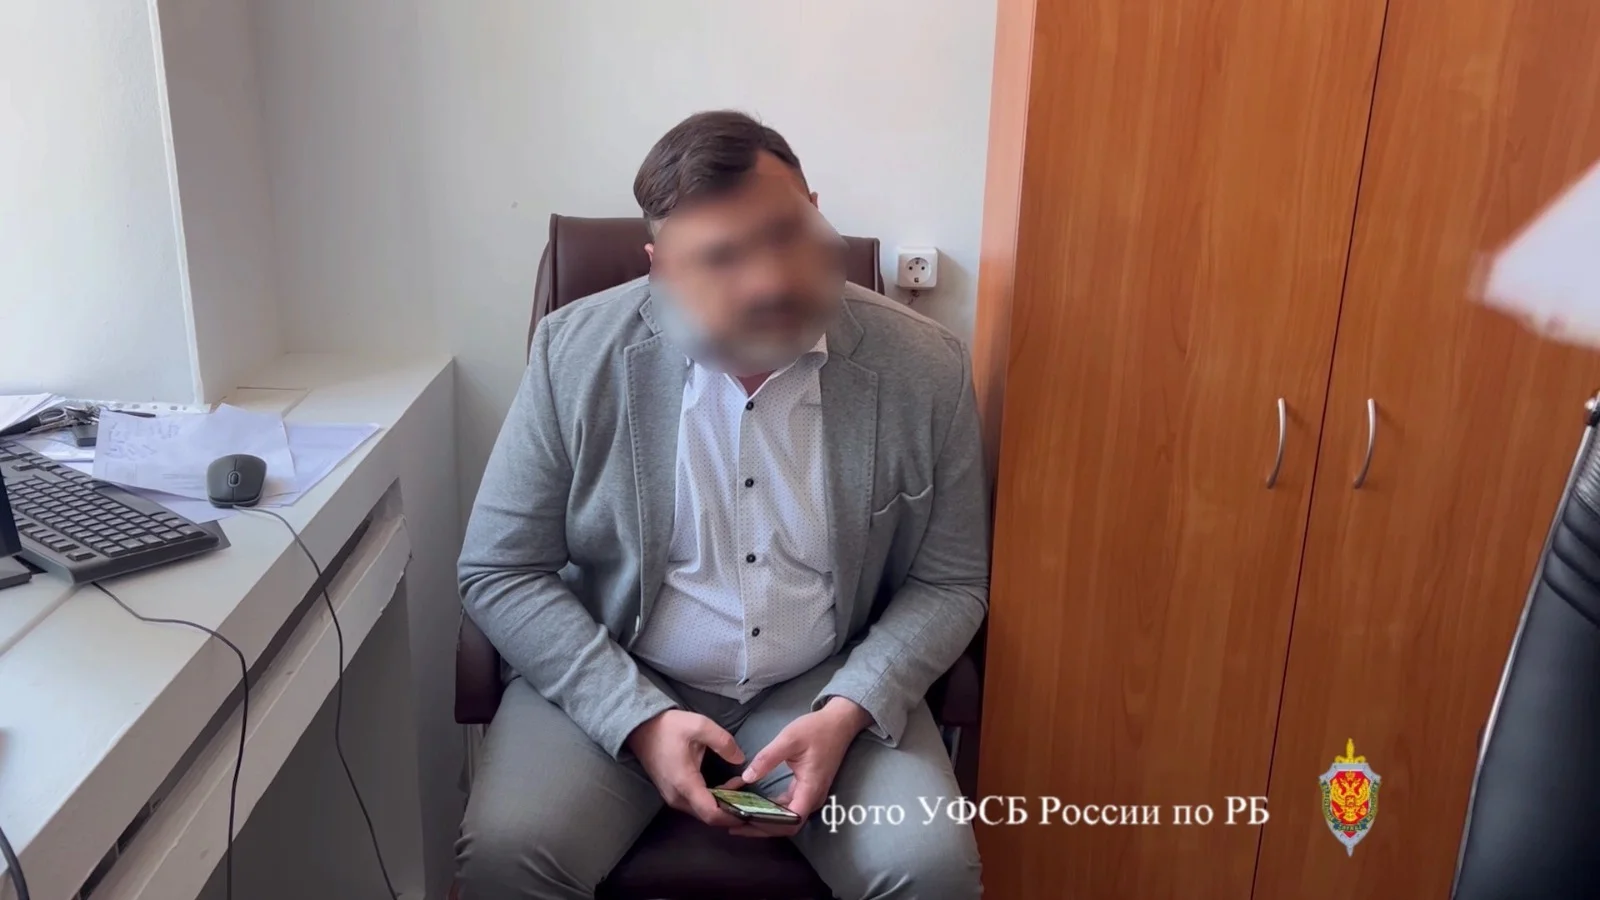 Зачистка продолжается: в Башкирии за особо крупную взятку задержали депутата